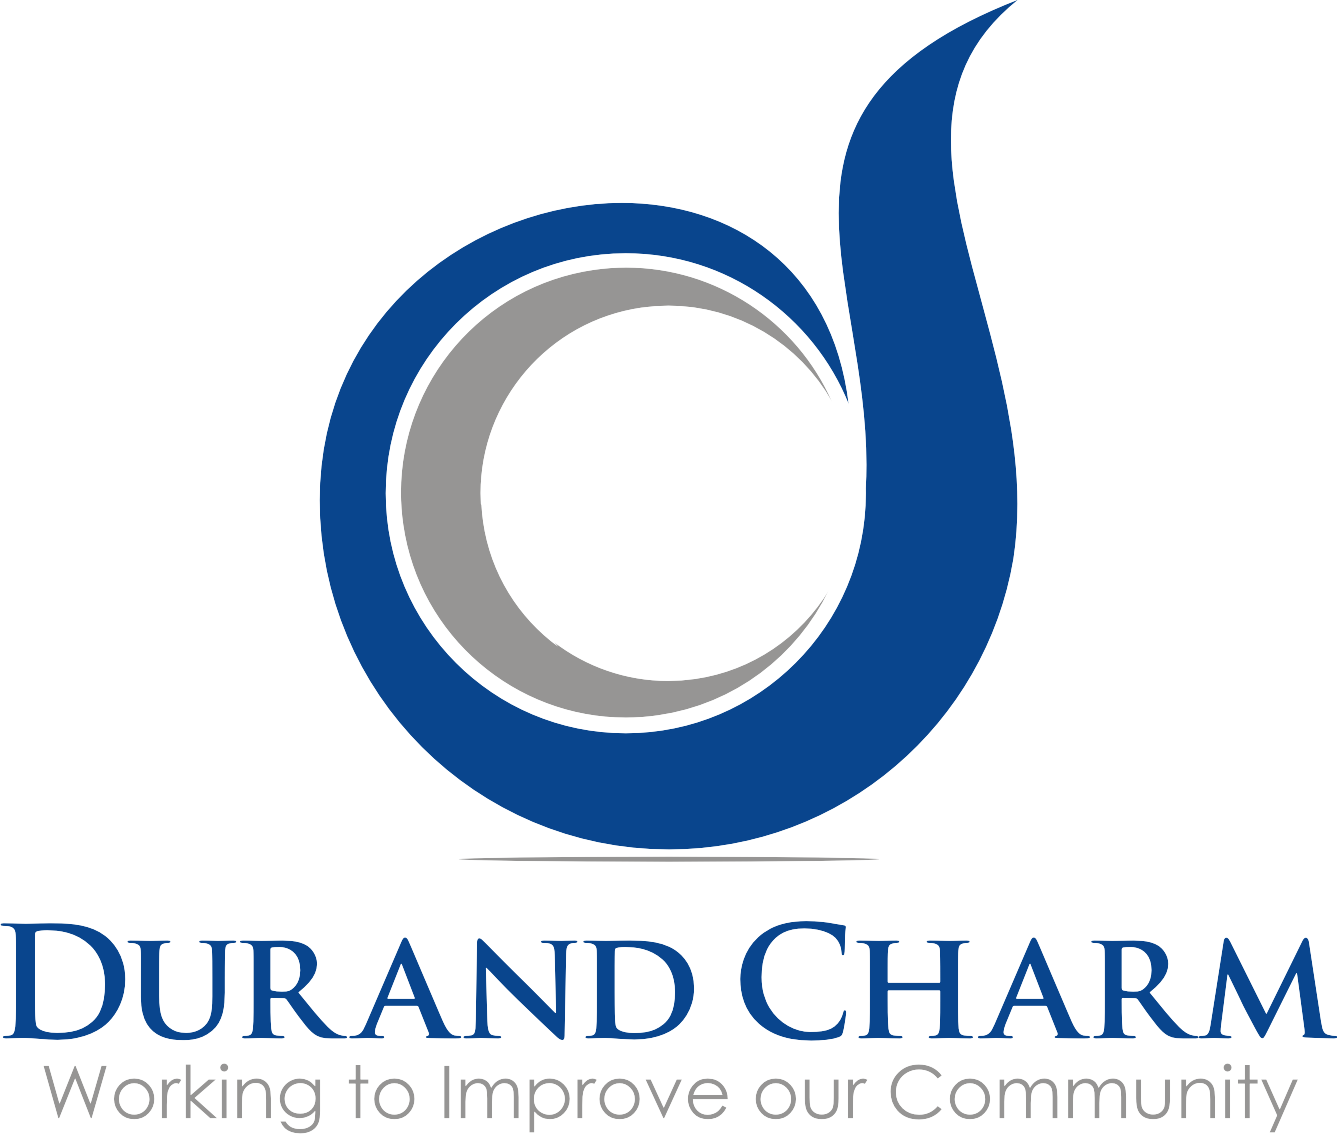 Durand Charm